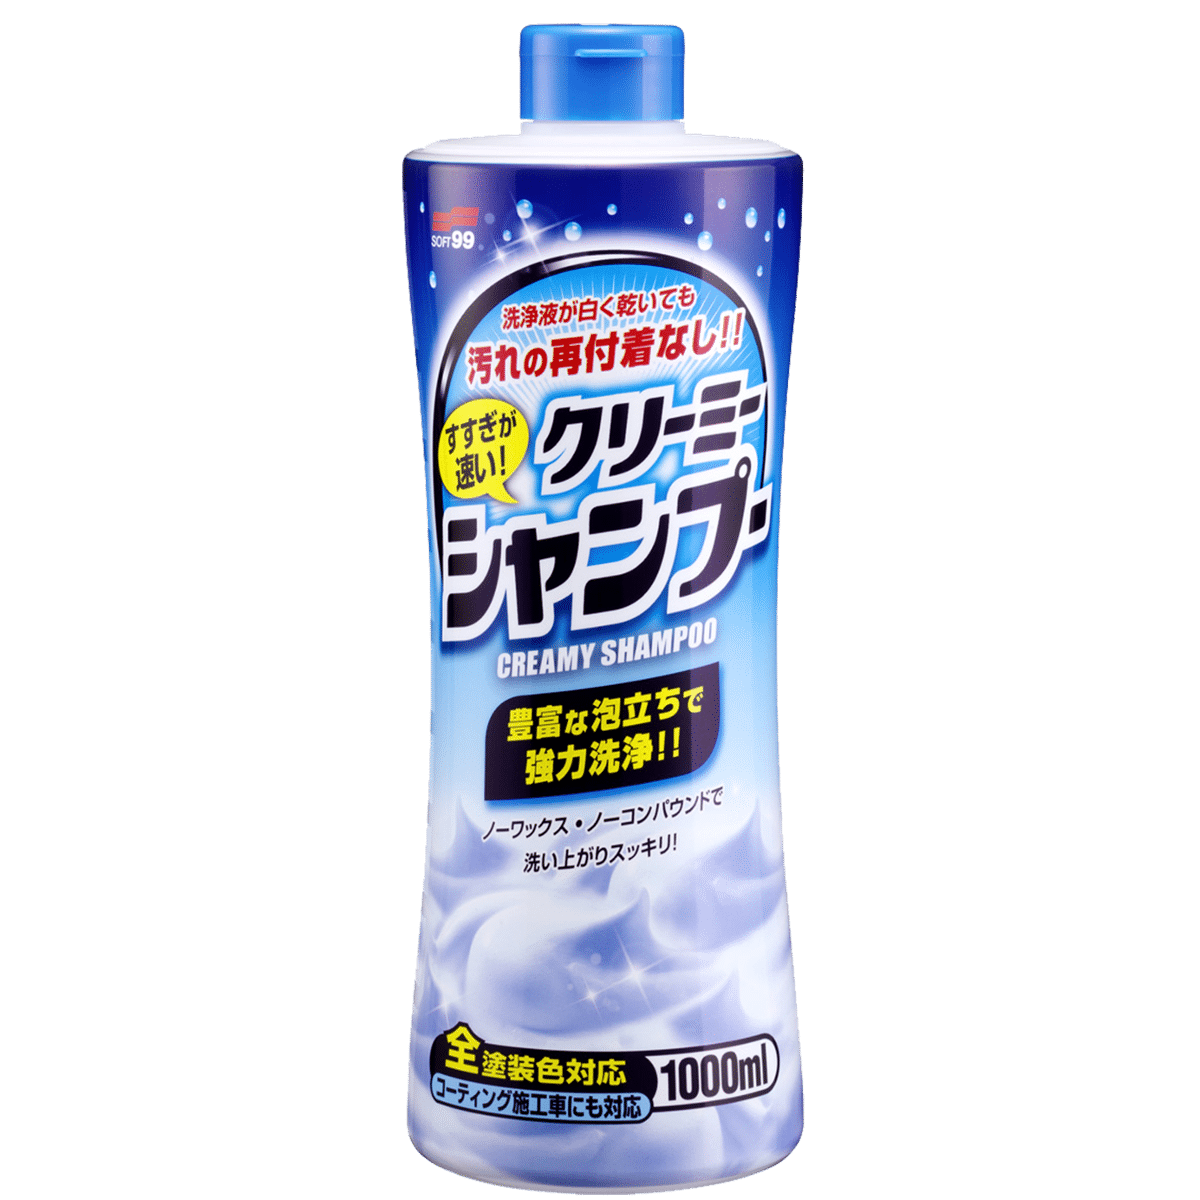 SOFT99 Neutral Shampoo Creamy 1000ml Kremowy Szampon Samochodowy o Mentolowym Zapachu